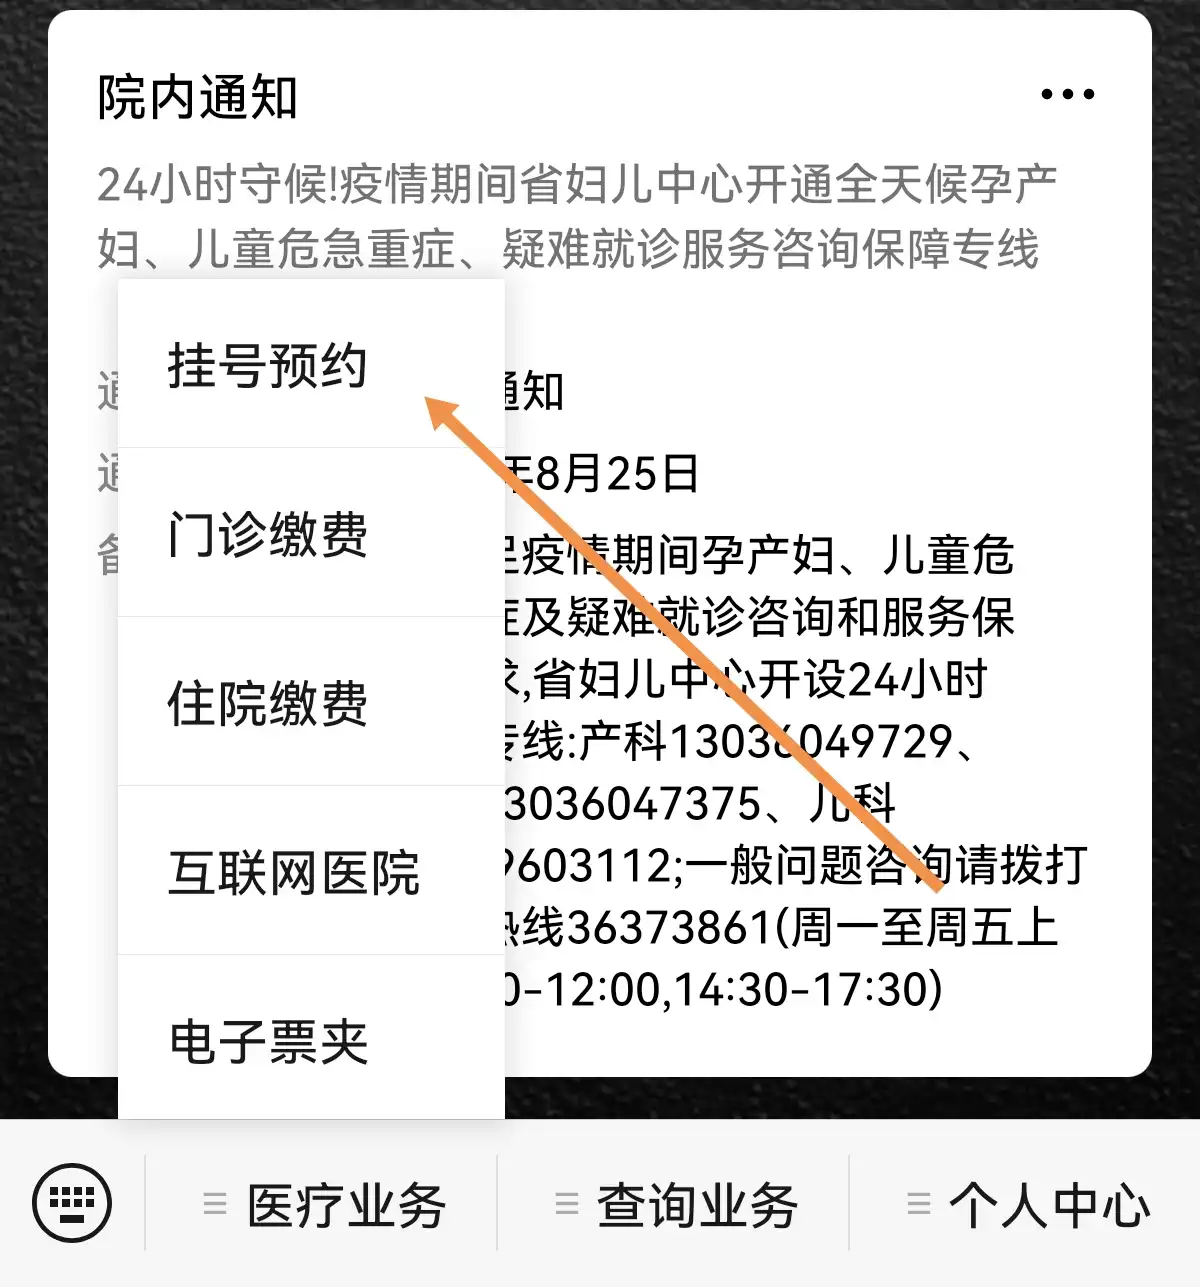 海南省儿童医院手机公众号挂号使用说明